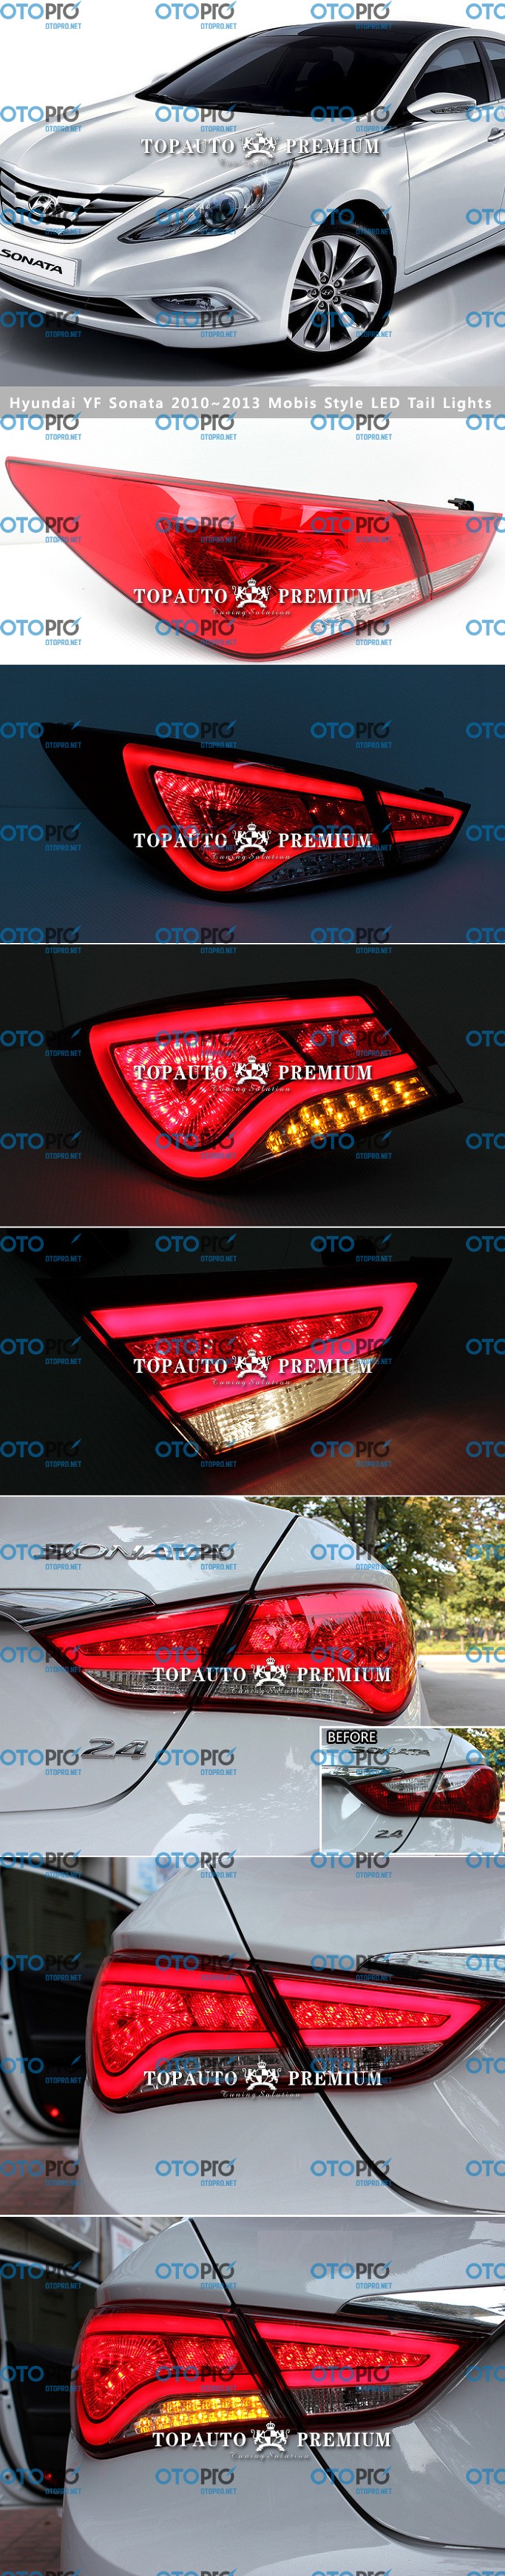 Đèn hậu LED nguyên bộ Mobis cho xe Hyundai Sonata 2013